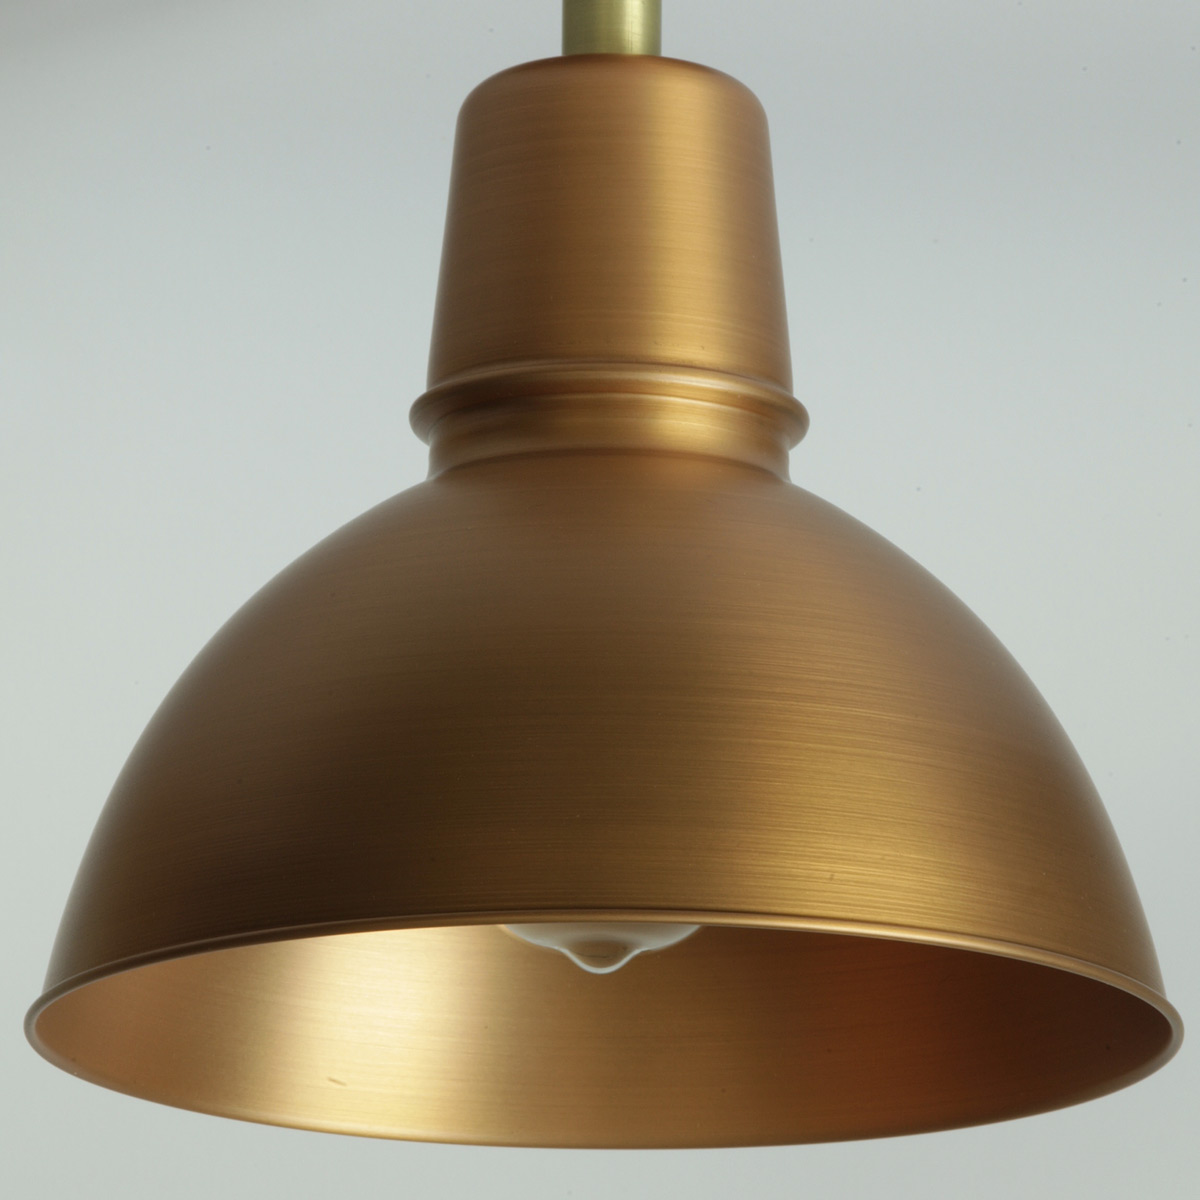 KÖLN I Bauhaus-Gelenkleuchte: Schirm mit Ø 250 mm, hier in Kupfer matt lackiert